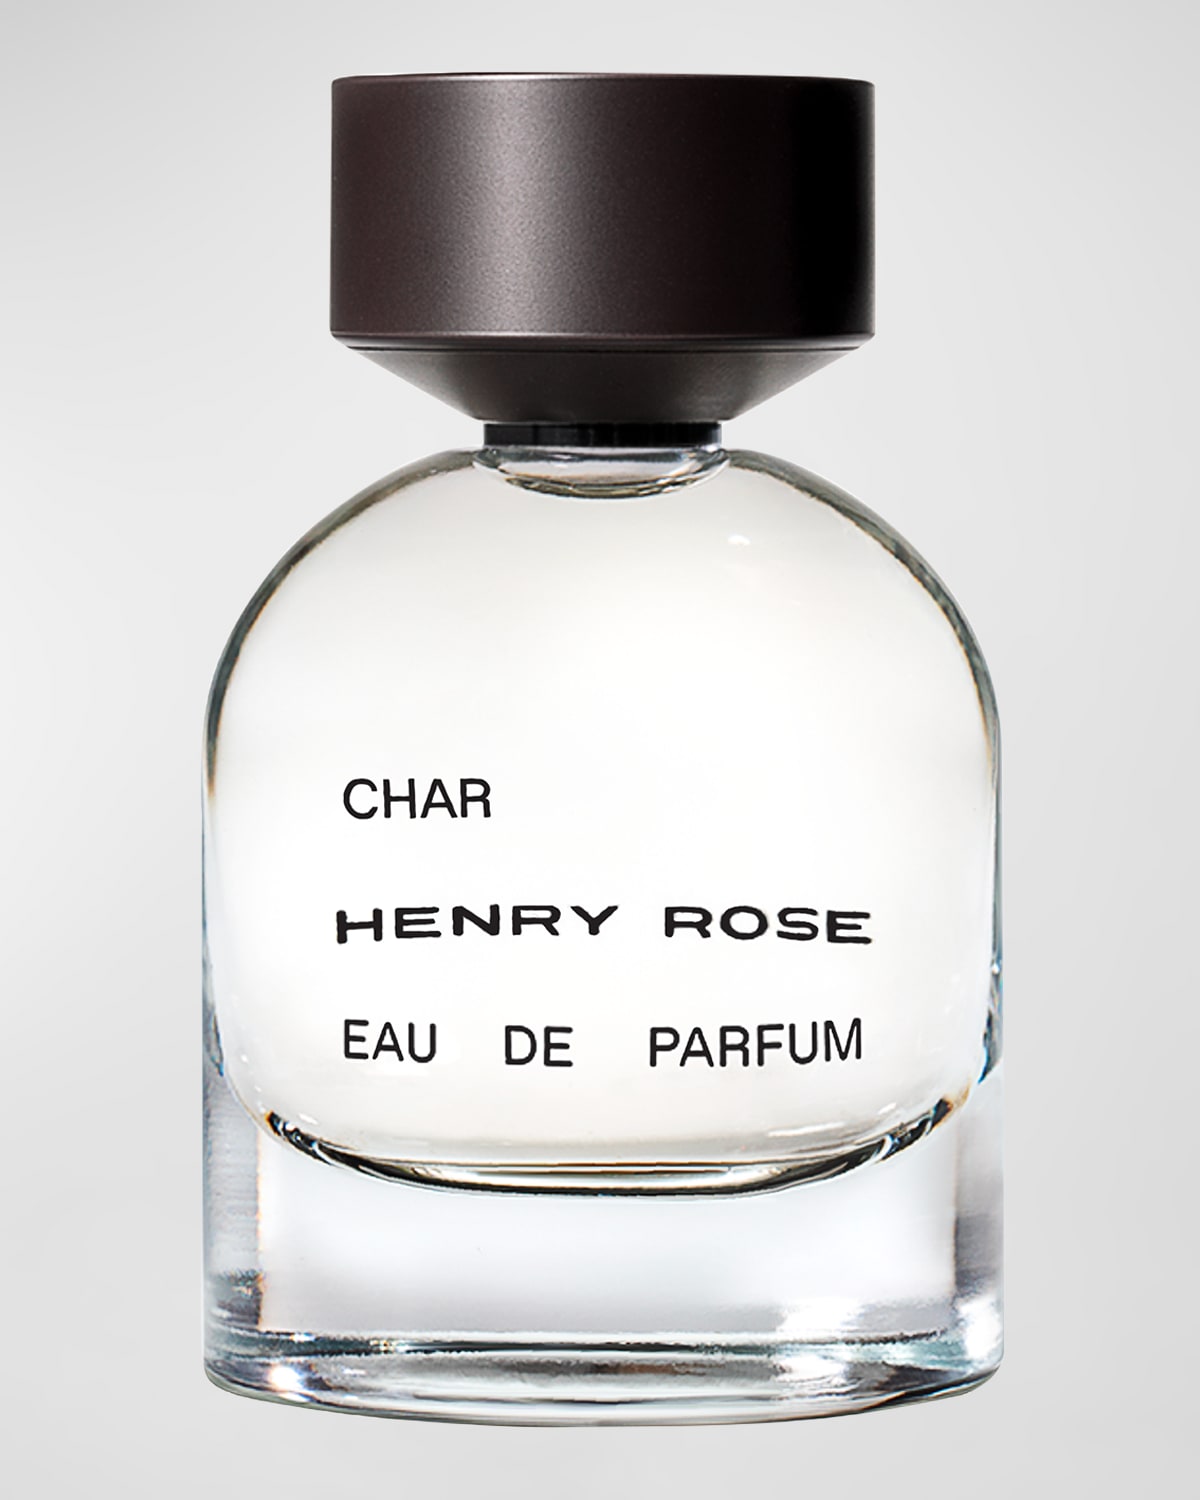 HENRY ROSE Char Eau de Parfum, 1.7 oz.